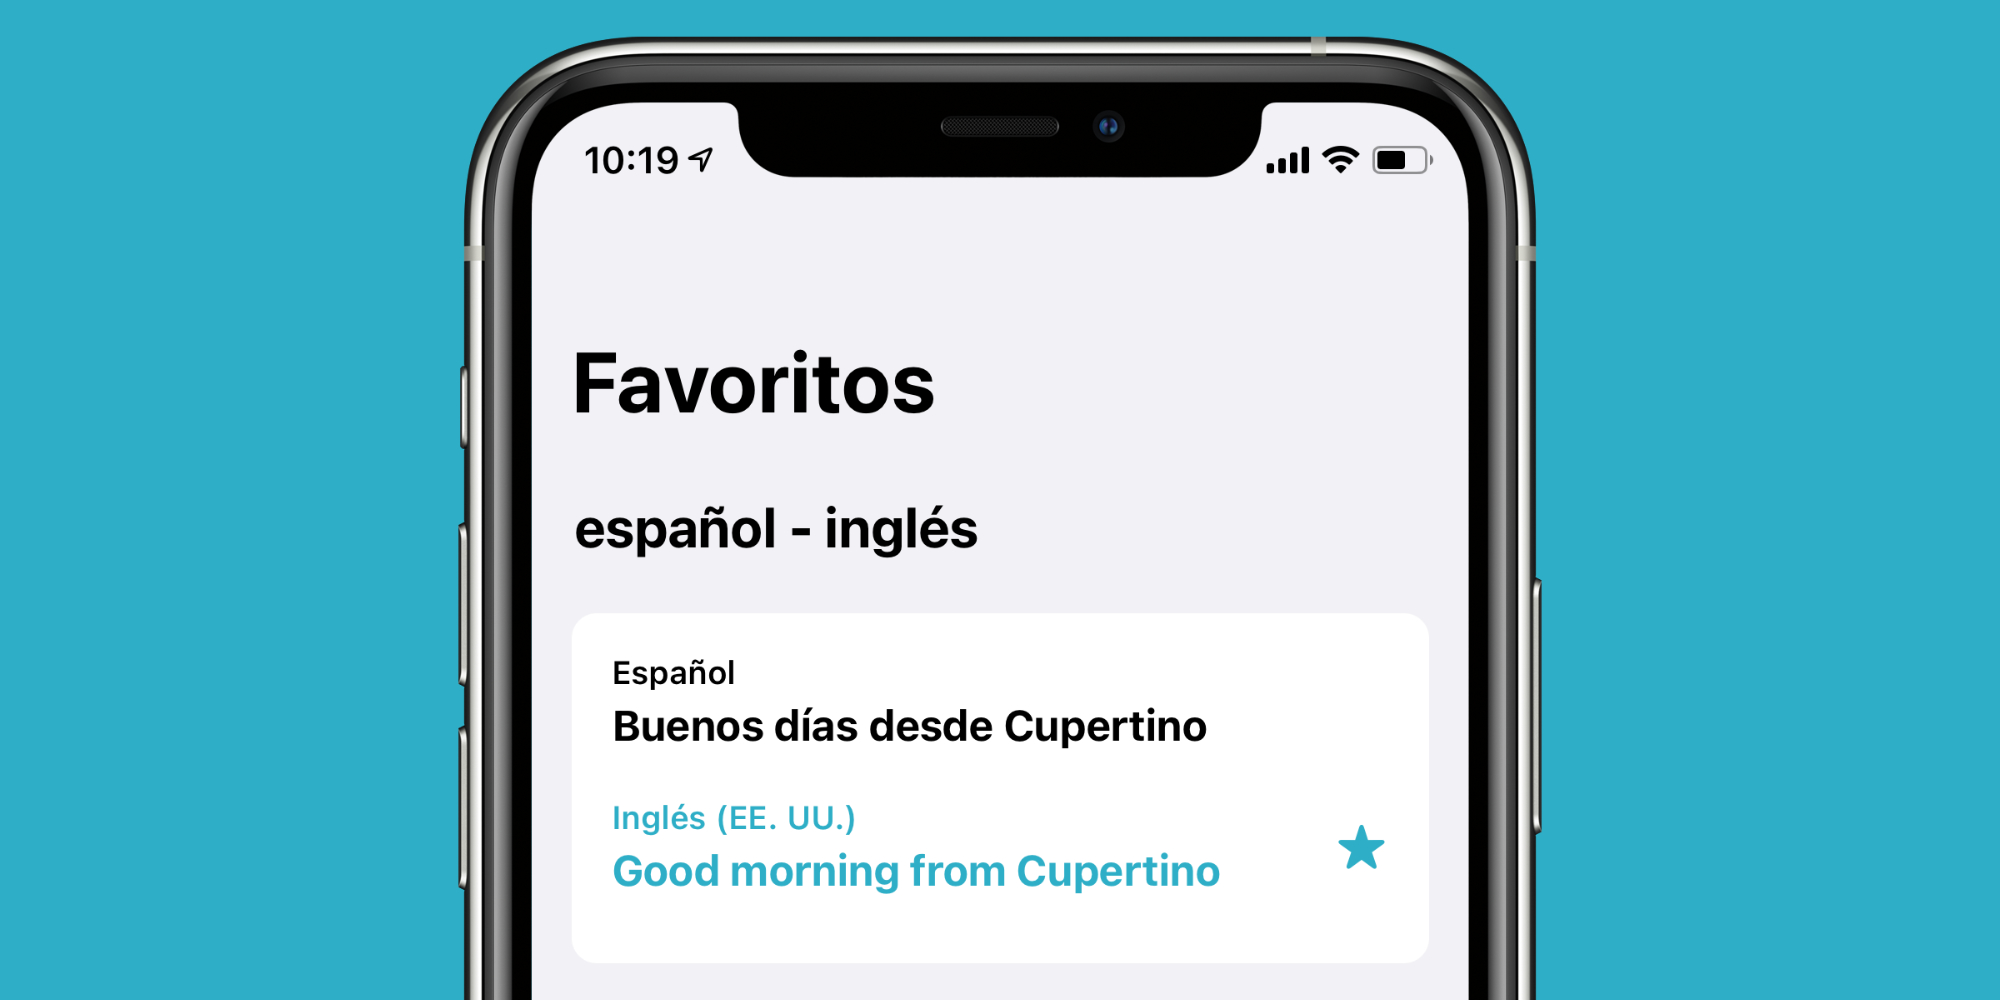 Cómo guardar traducciones en la app Traducir para consultarlas cuando las necesitemos